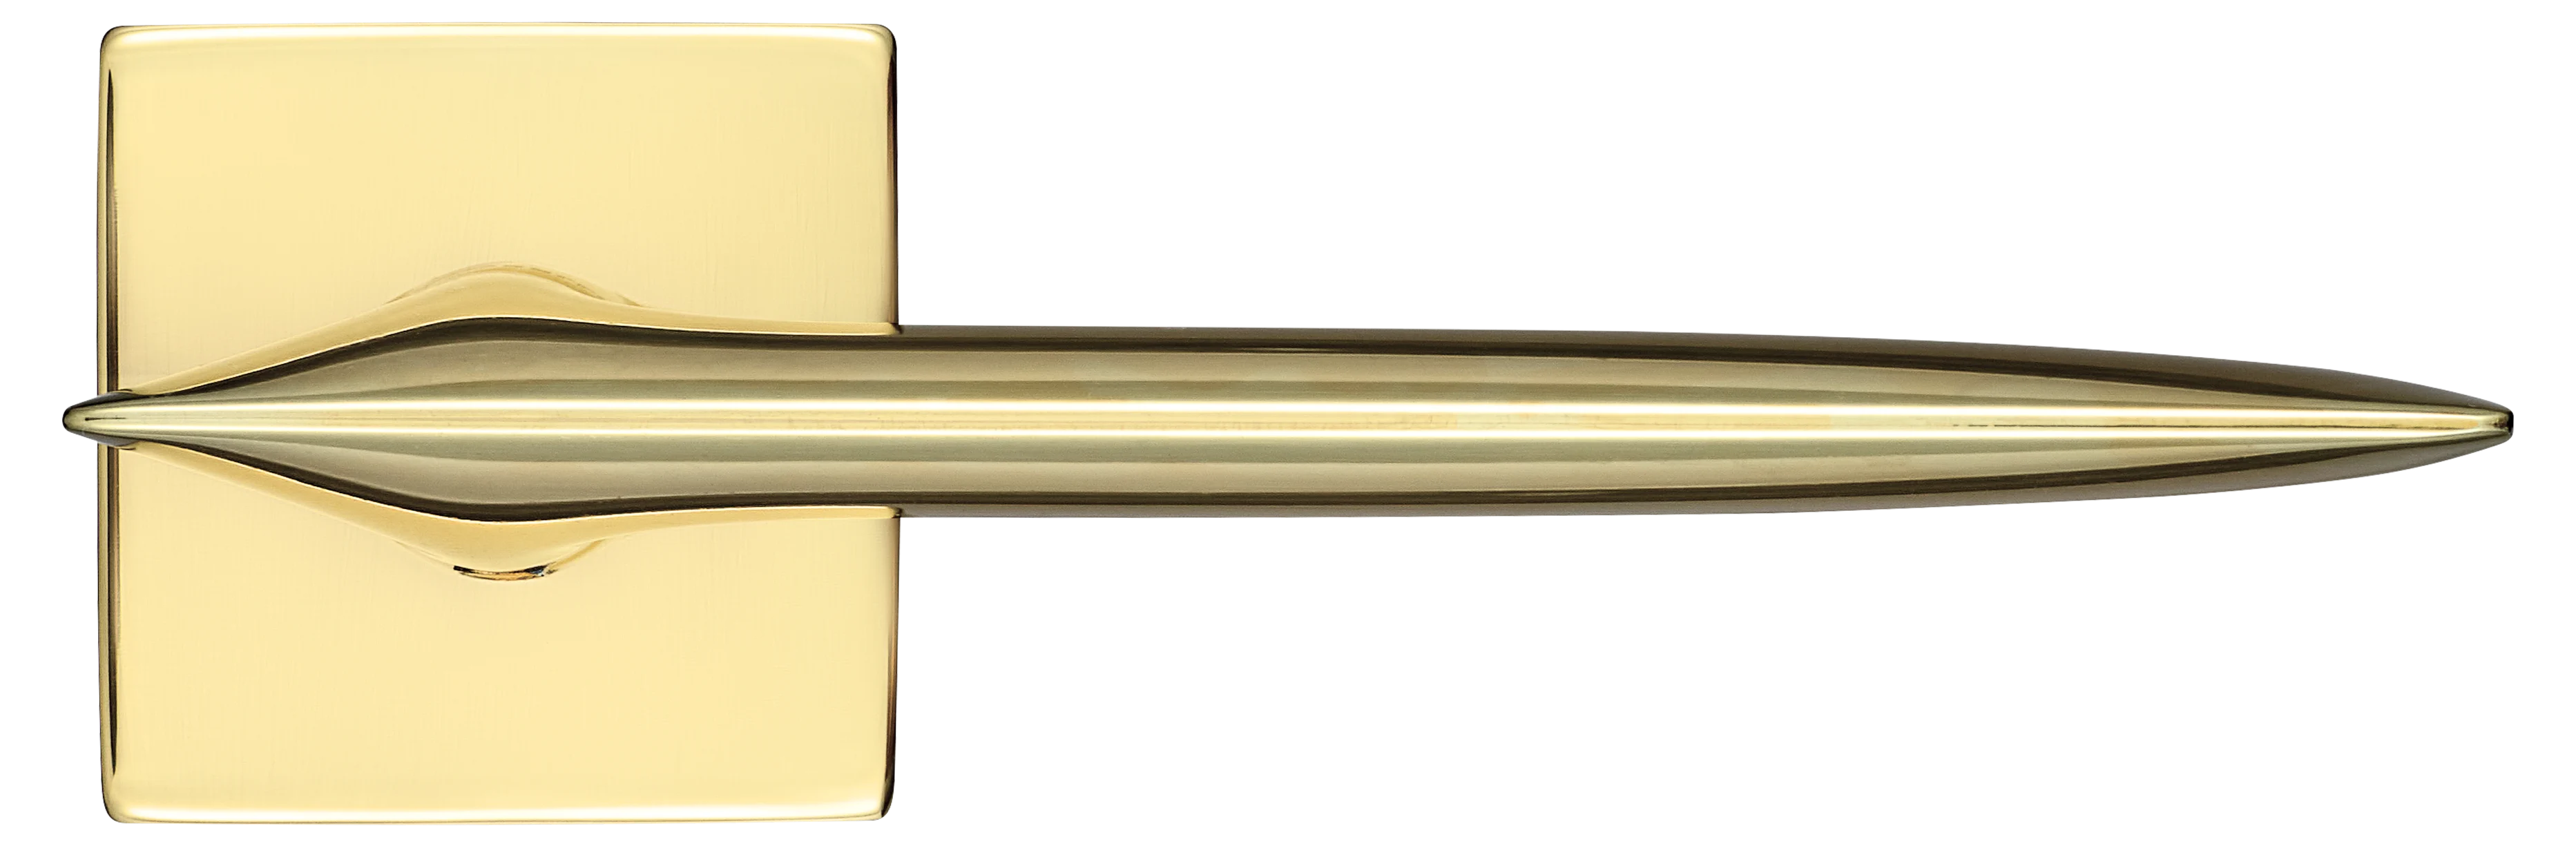 GALACTIC S5 OTL, ручка дверная, цвет - золото